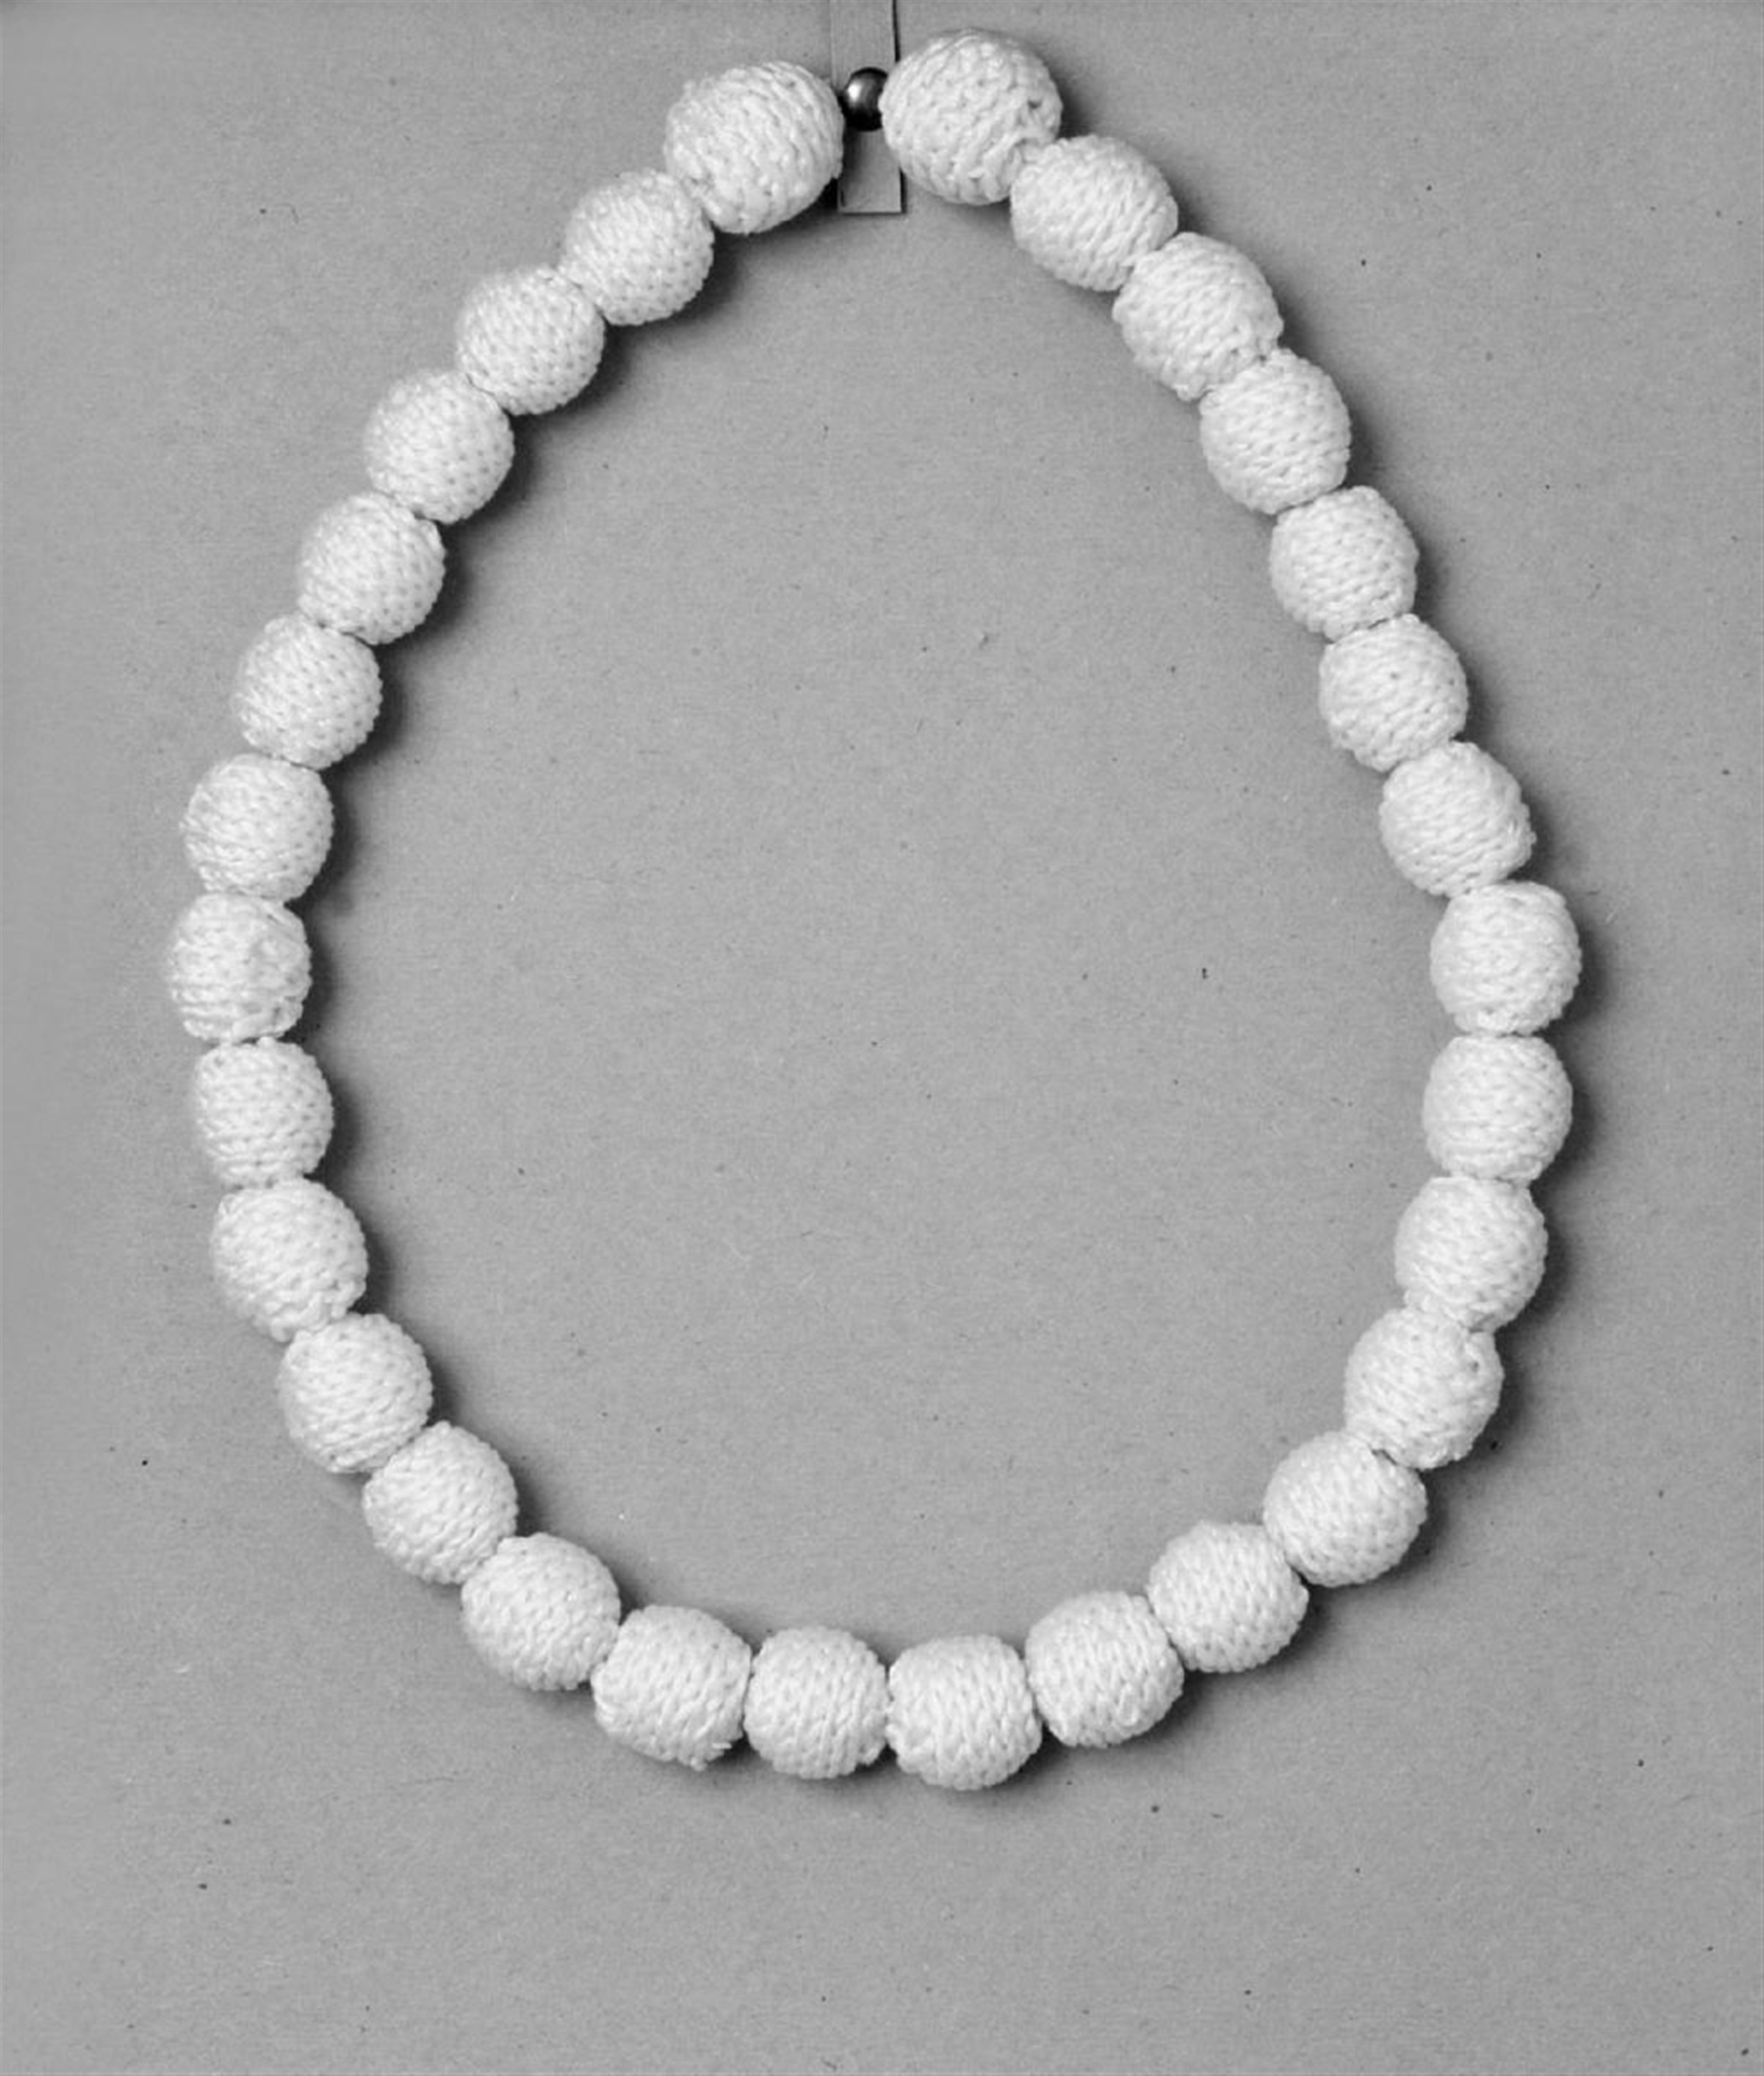 Rosemarie Trockel - Perlenkette - image-1